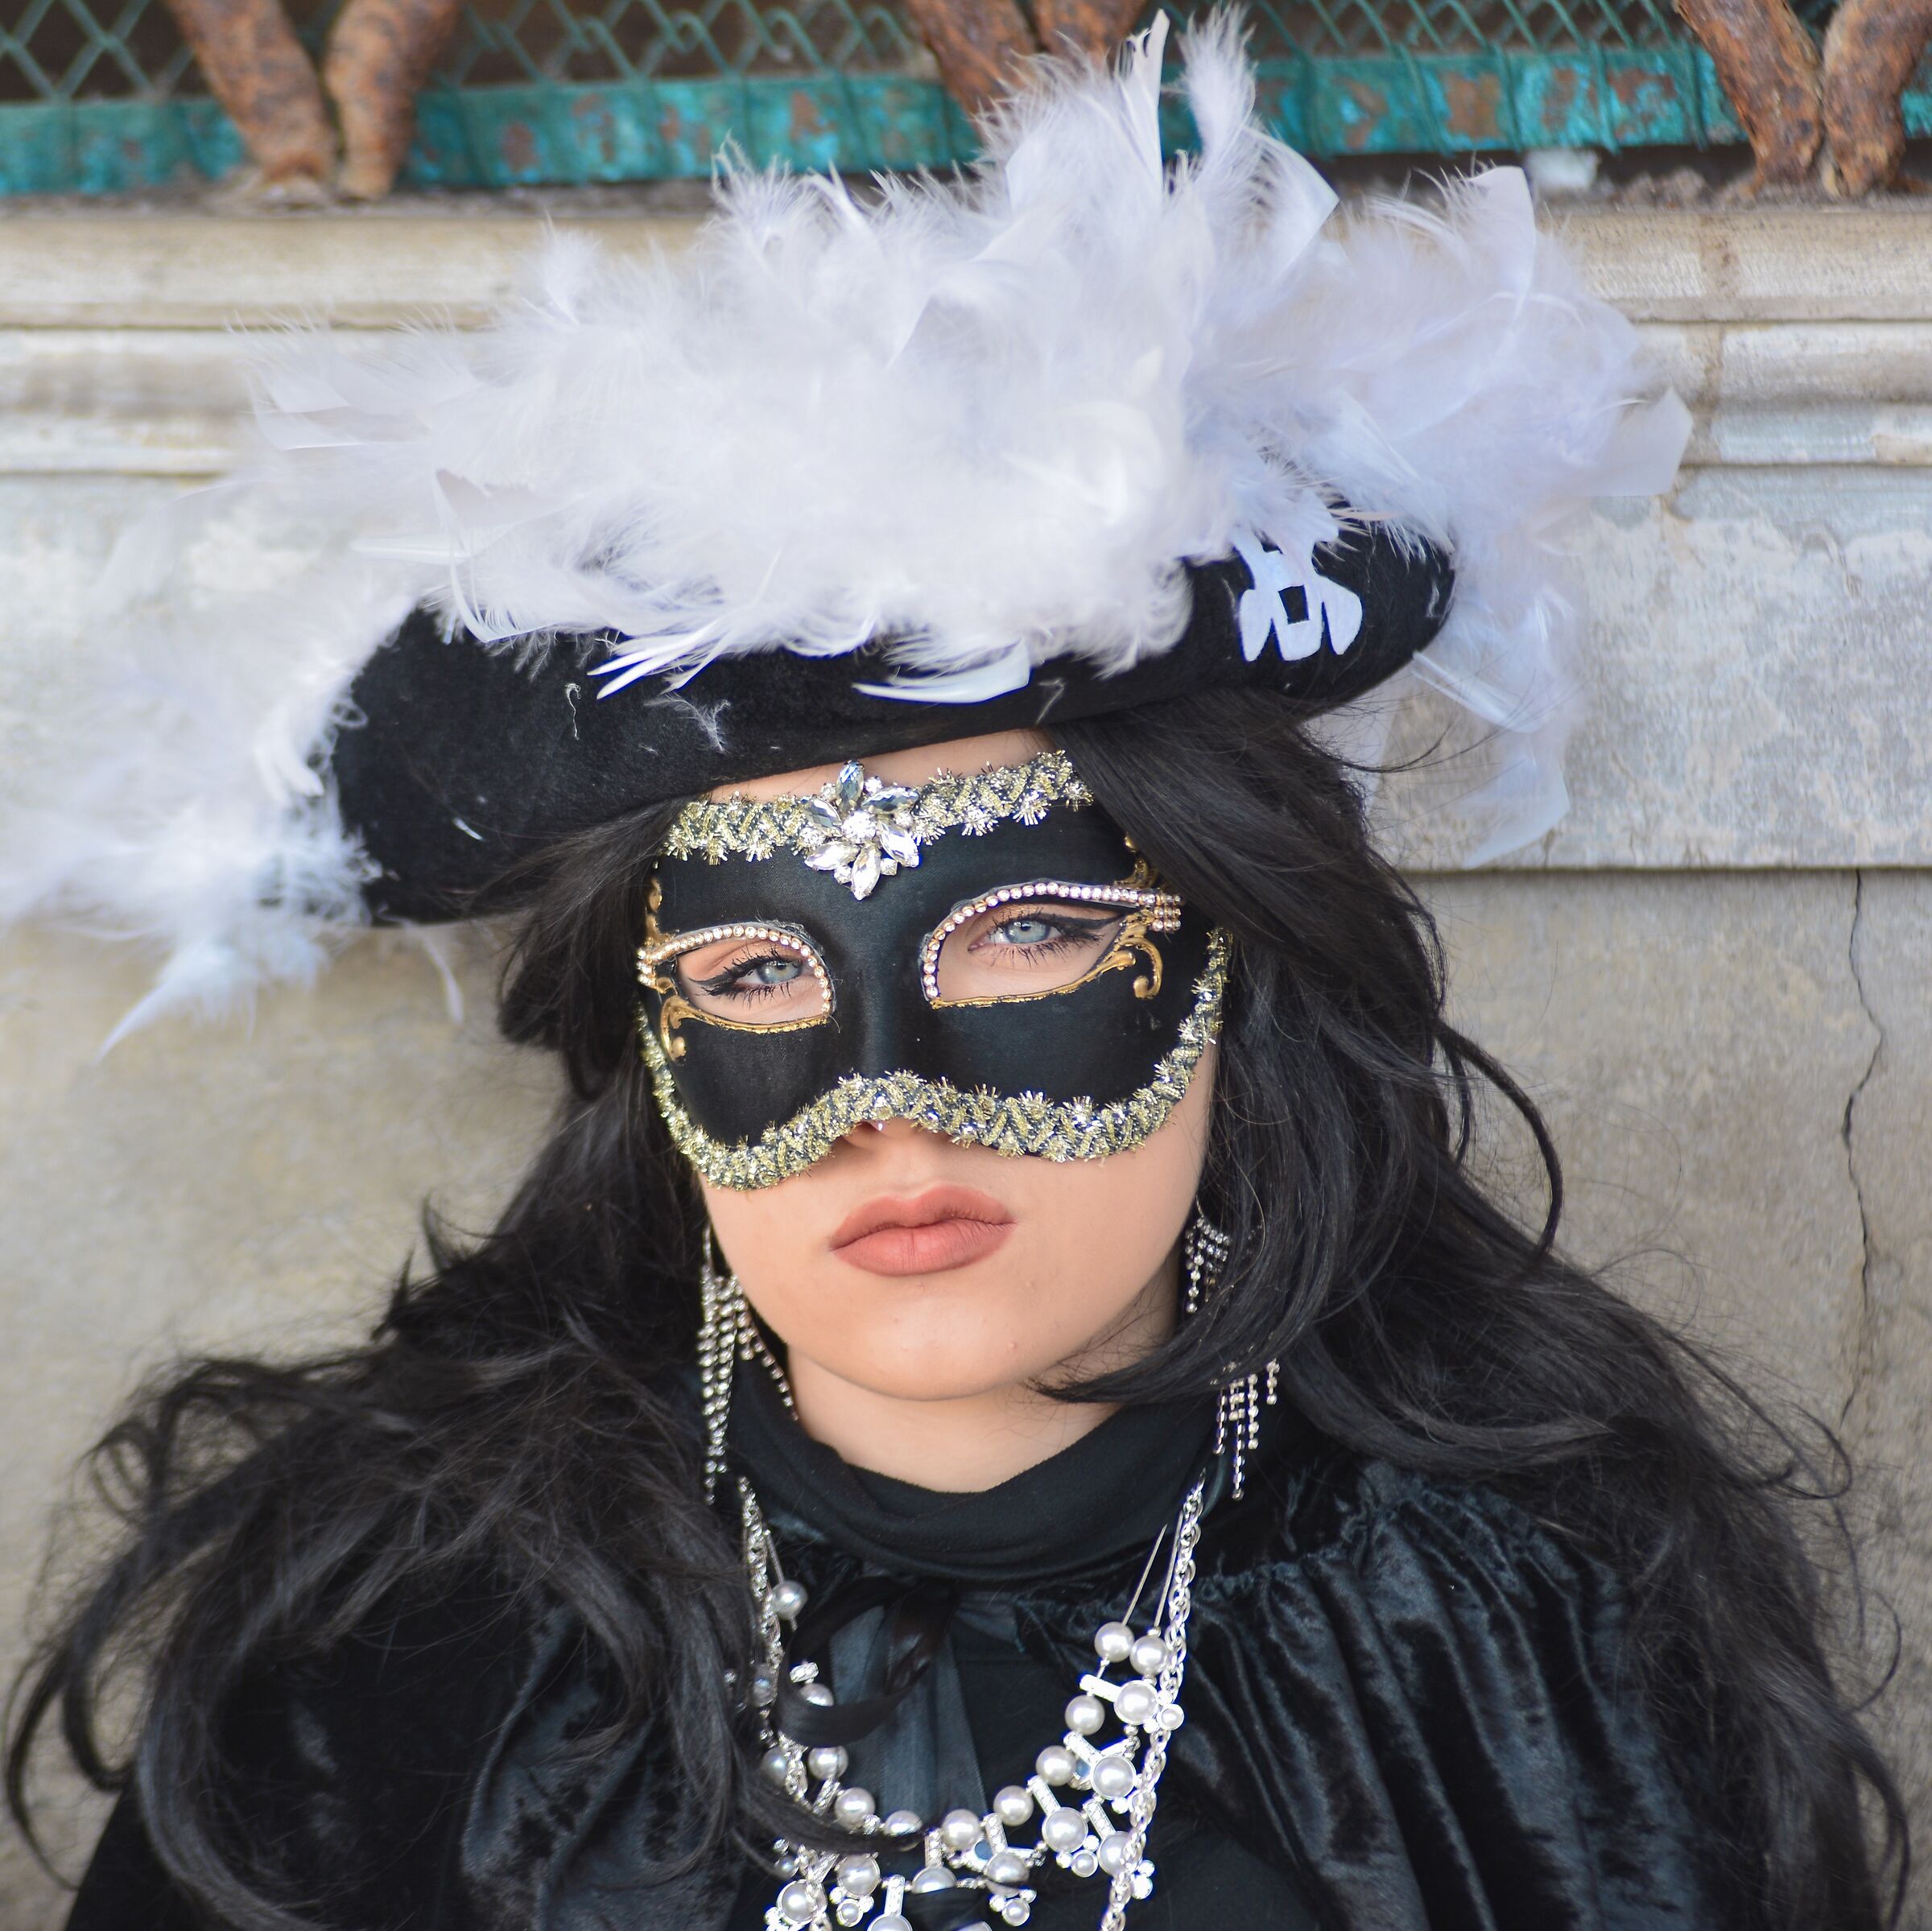 Venice-Girl in Mask...